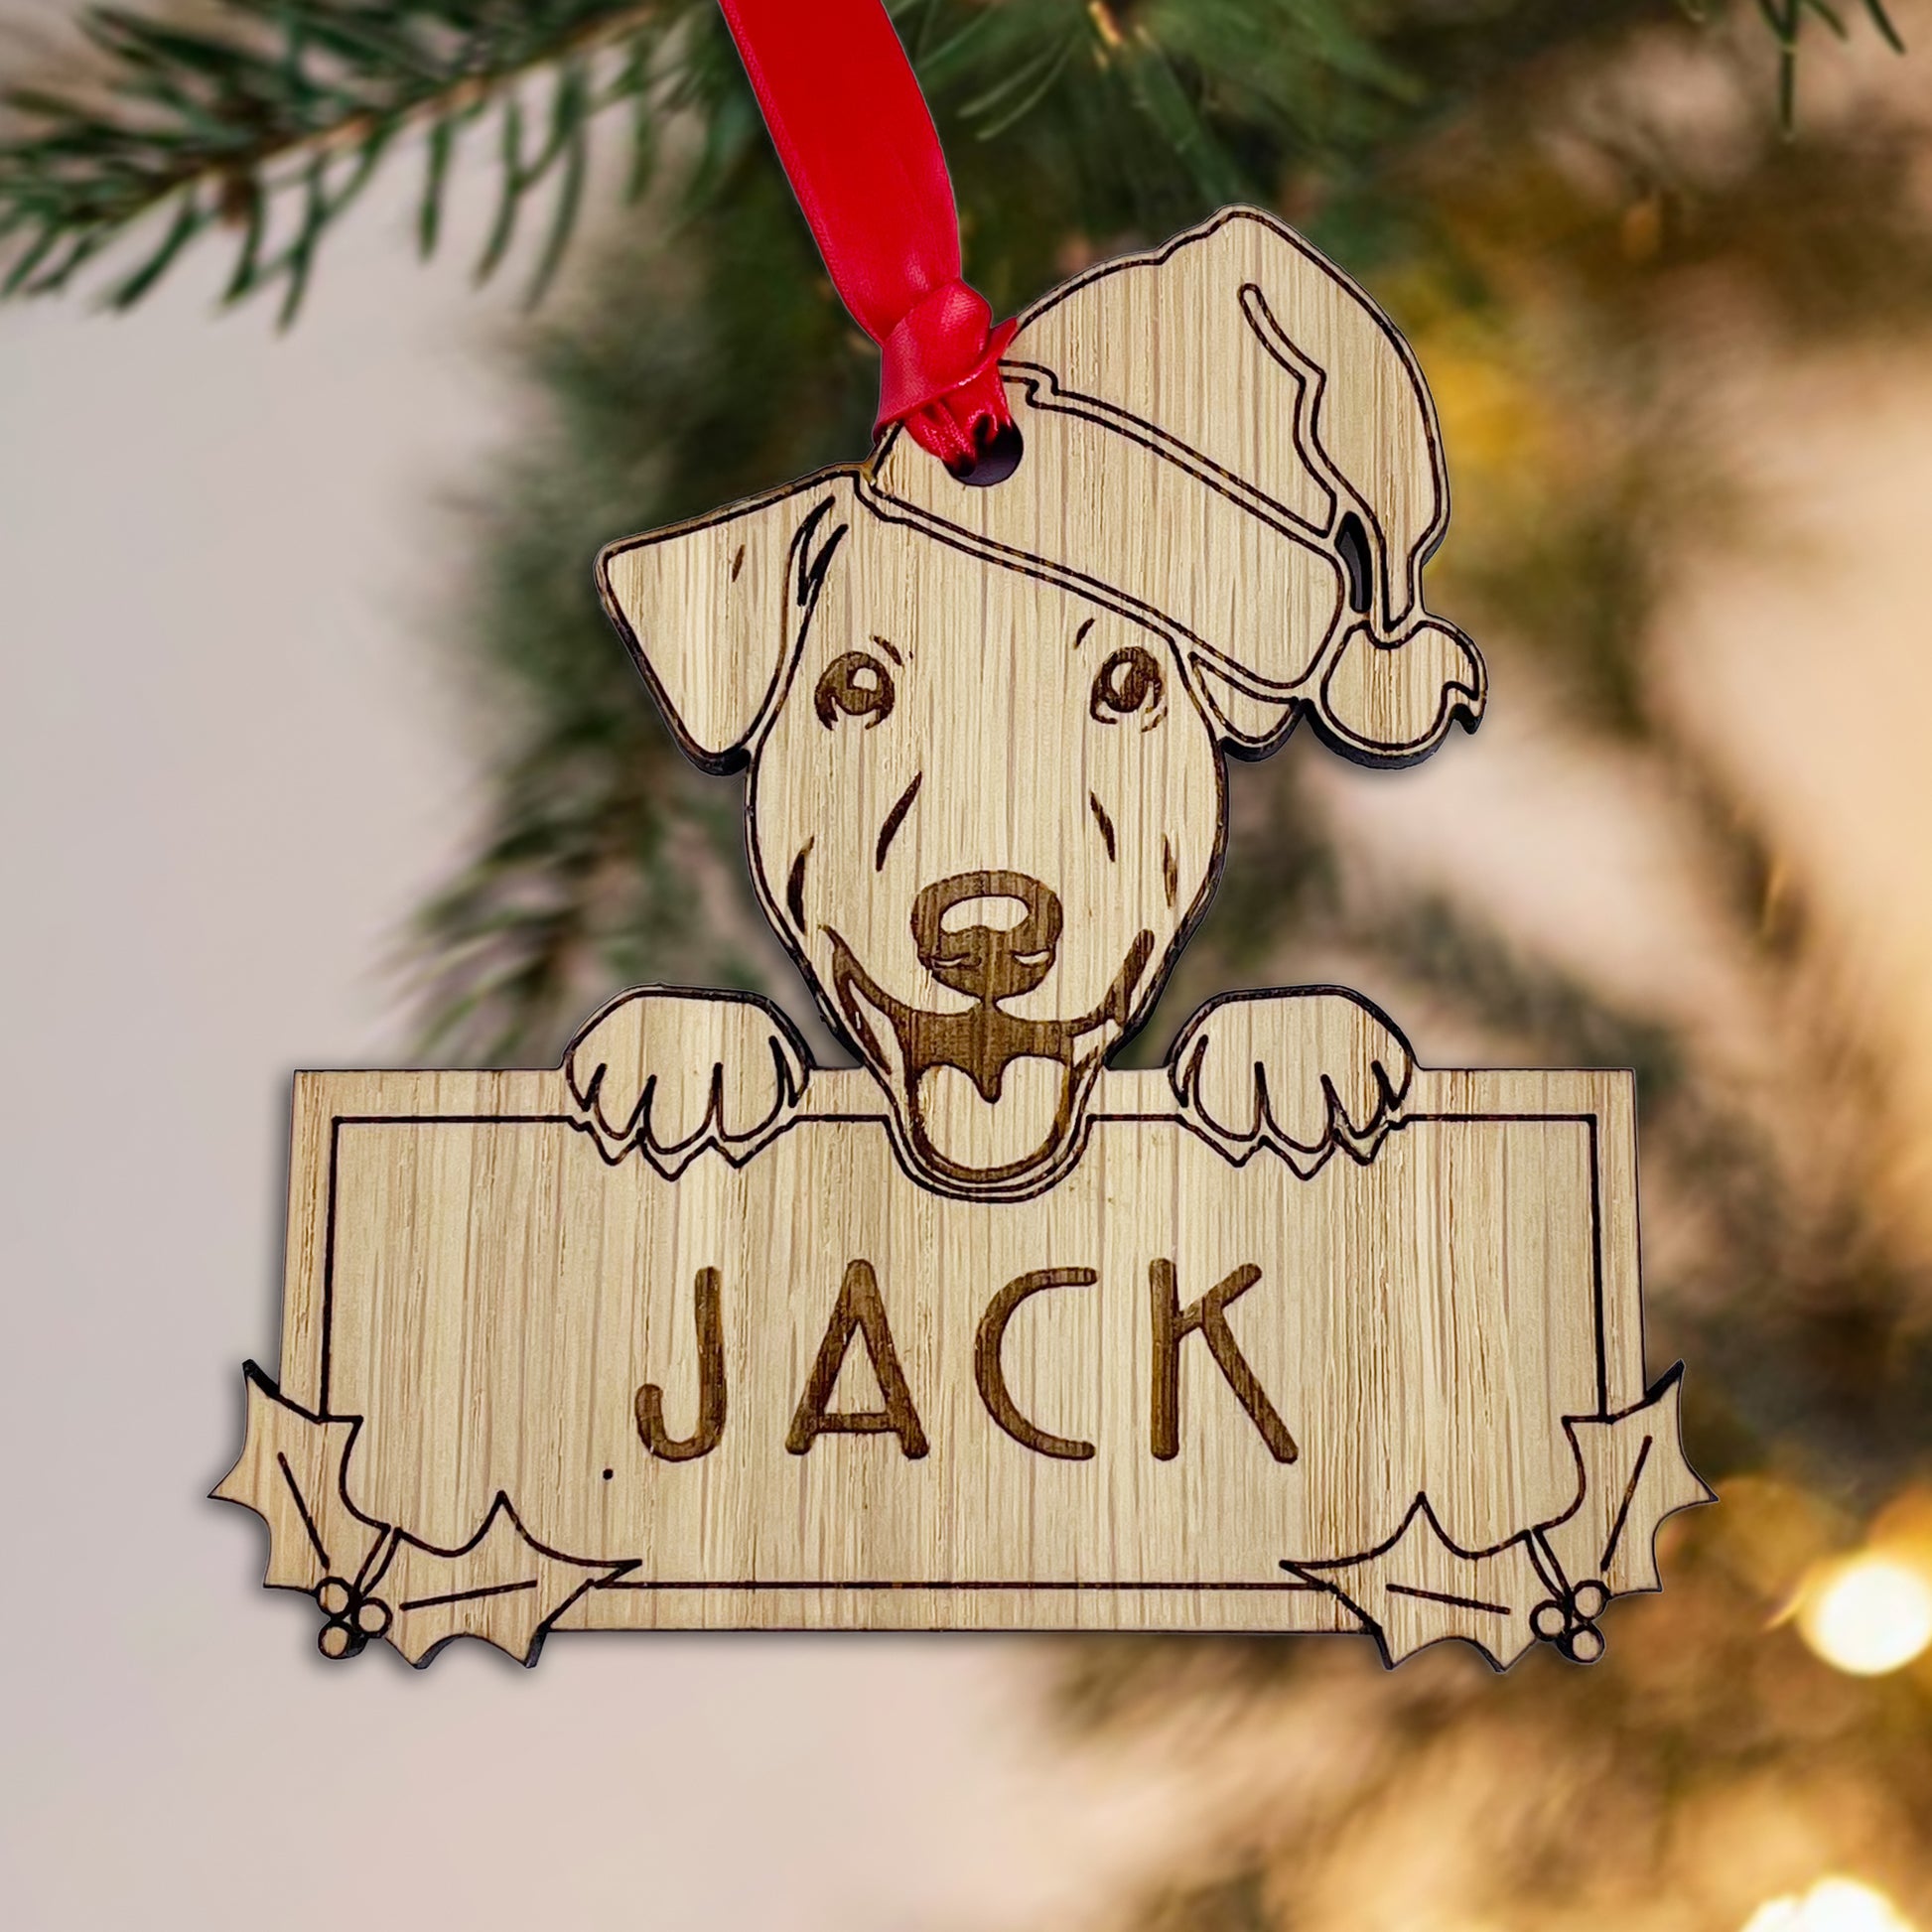 Personalised Jack Russell Dog Bauble - Peeking Dog - Oak Veneer Wood - Add your own name!